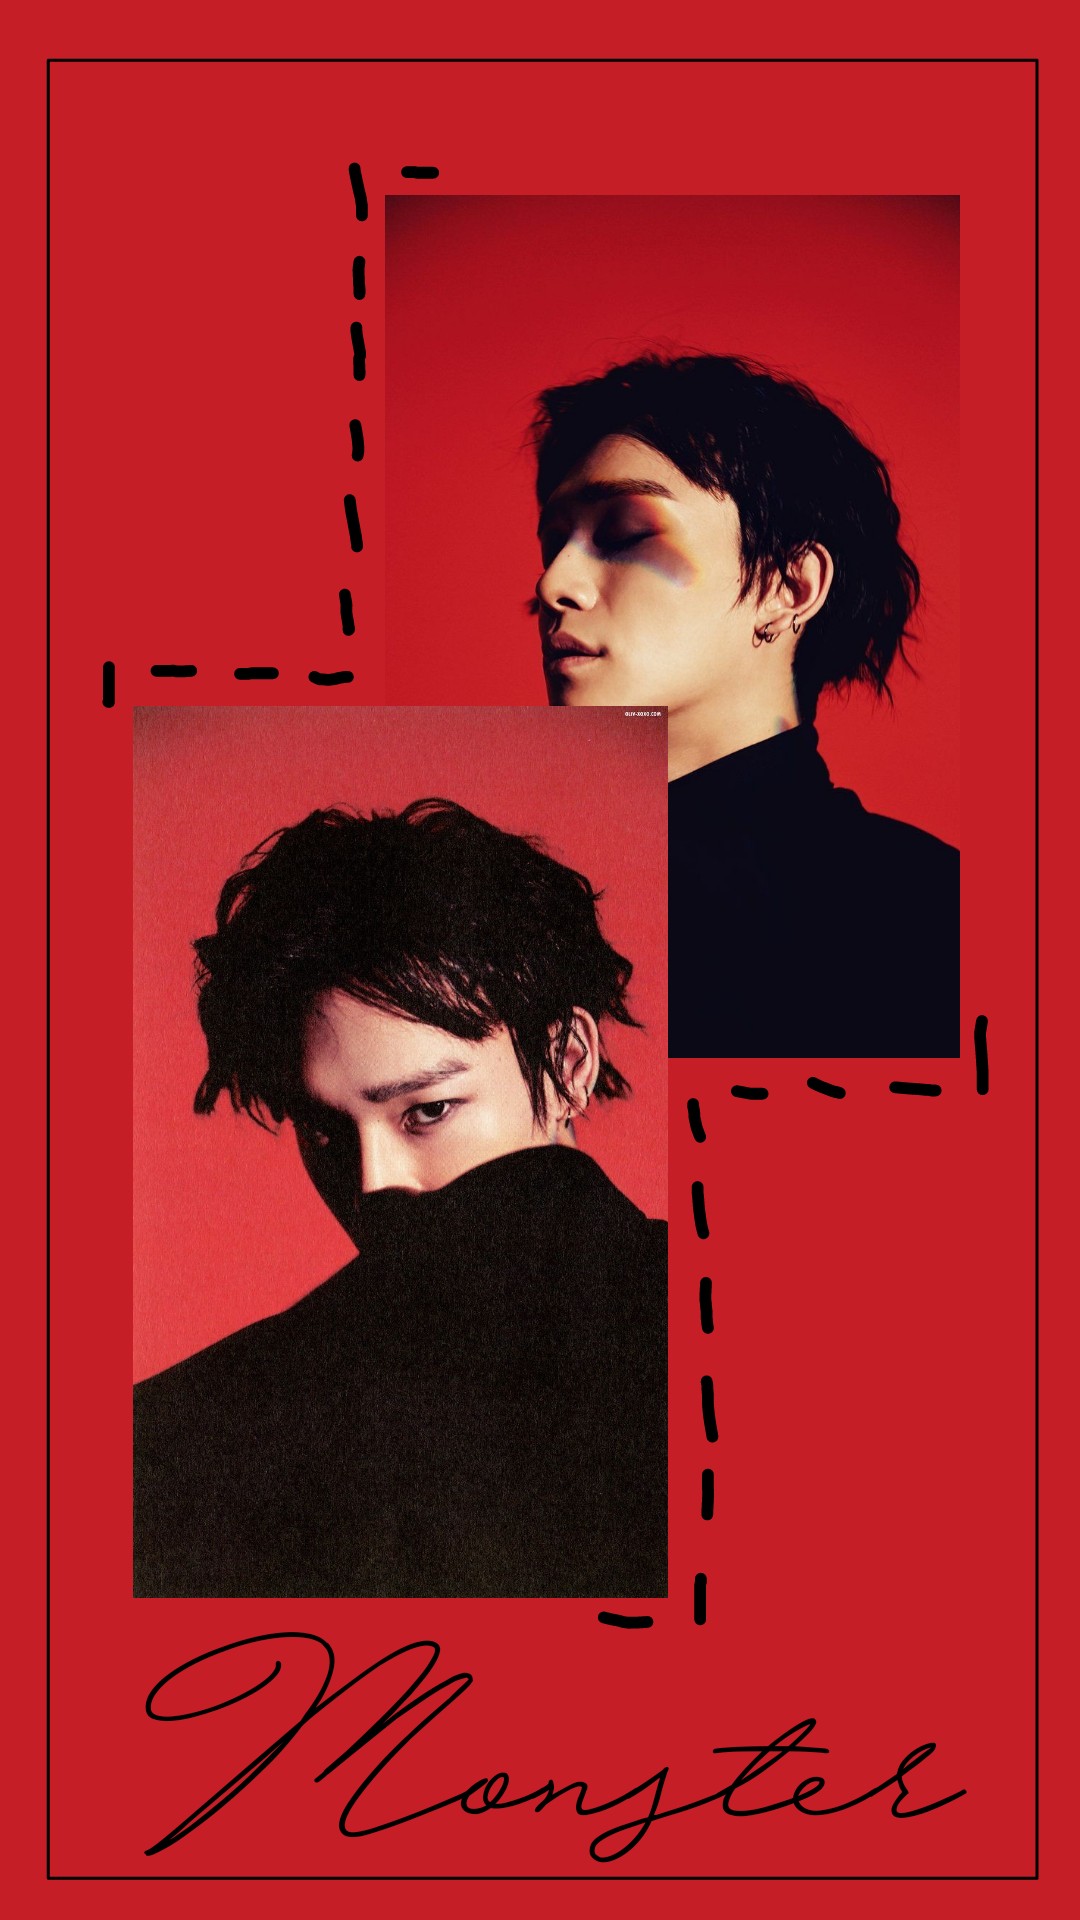 #exo #chen #kim #jongdae #wallpaper #red #monster - Poster - HD Wallpaper 